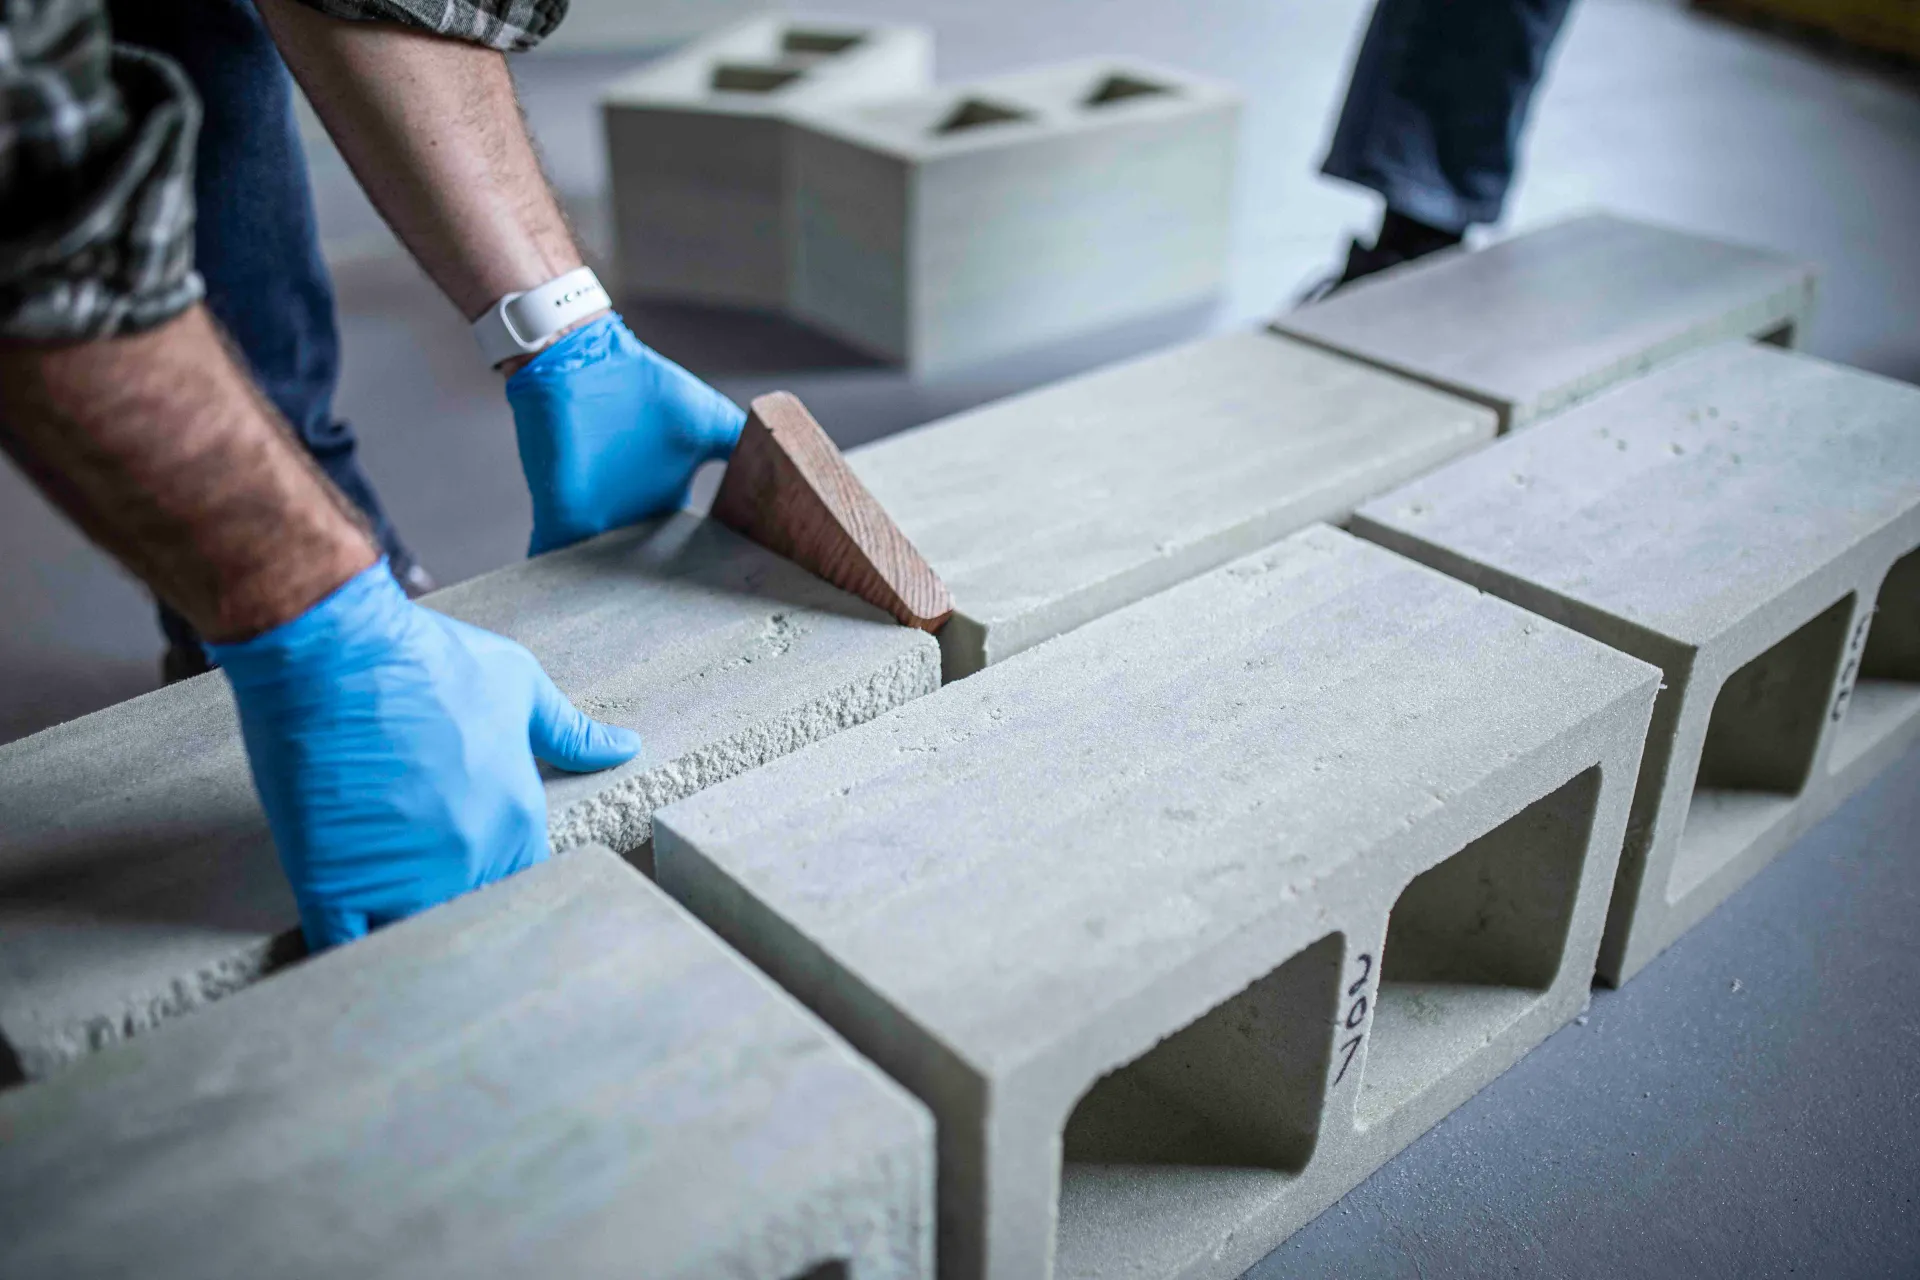 Algae-based concrete bricks: prometheus materials leads sustainable building revolution